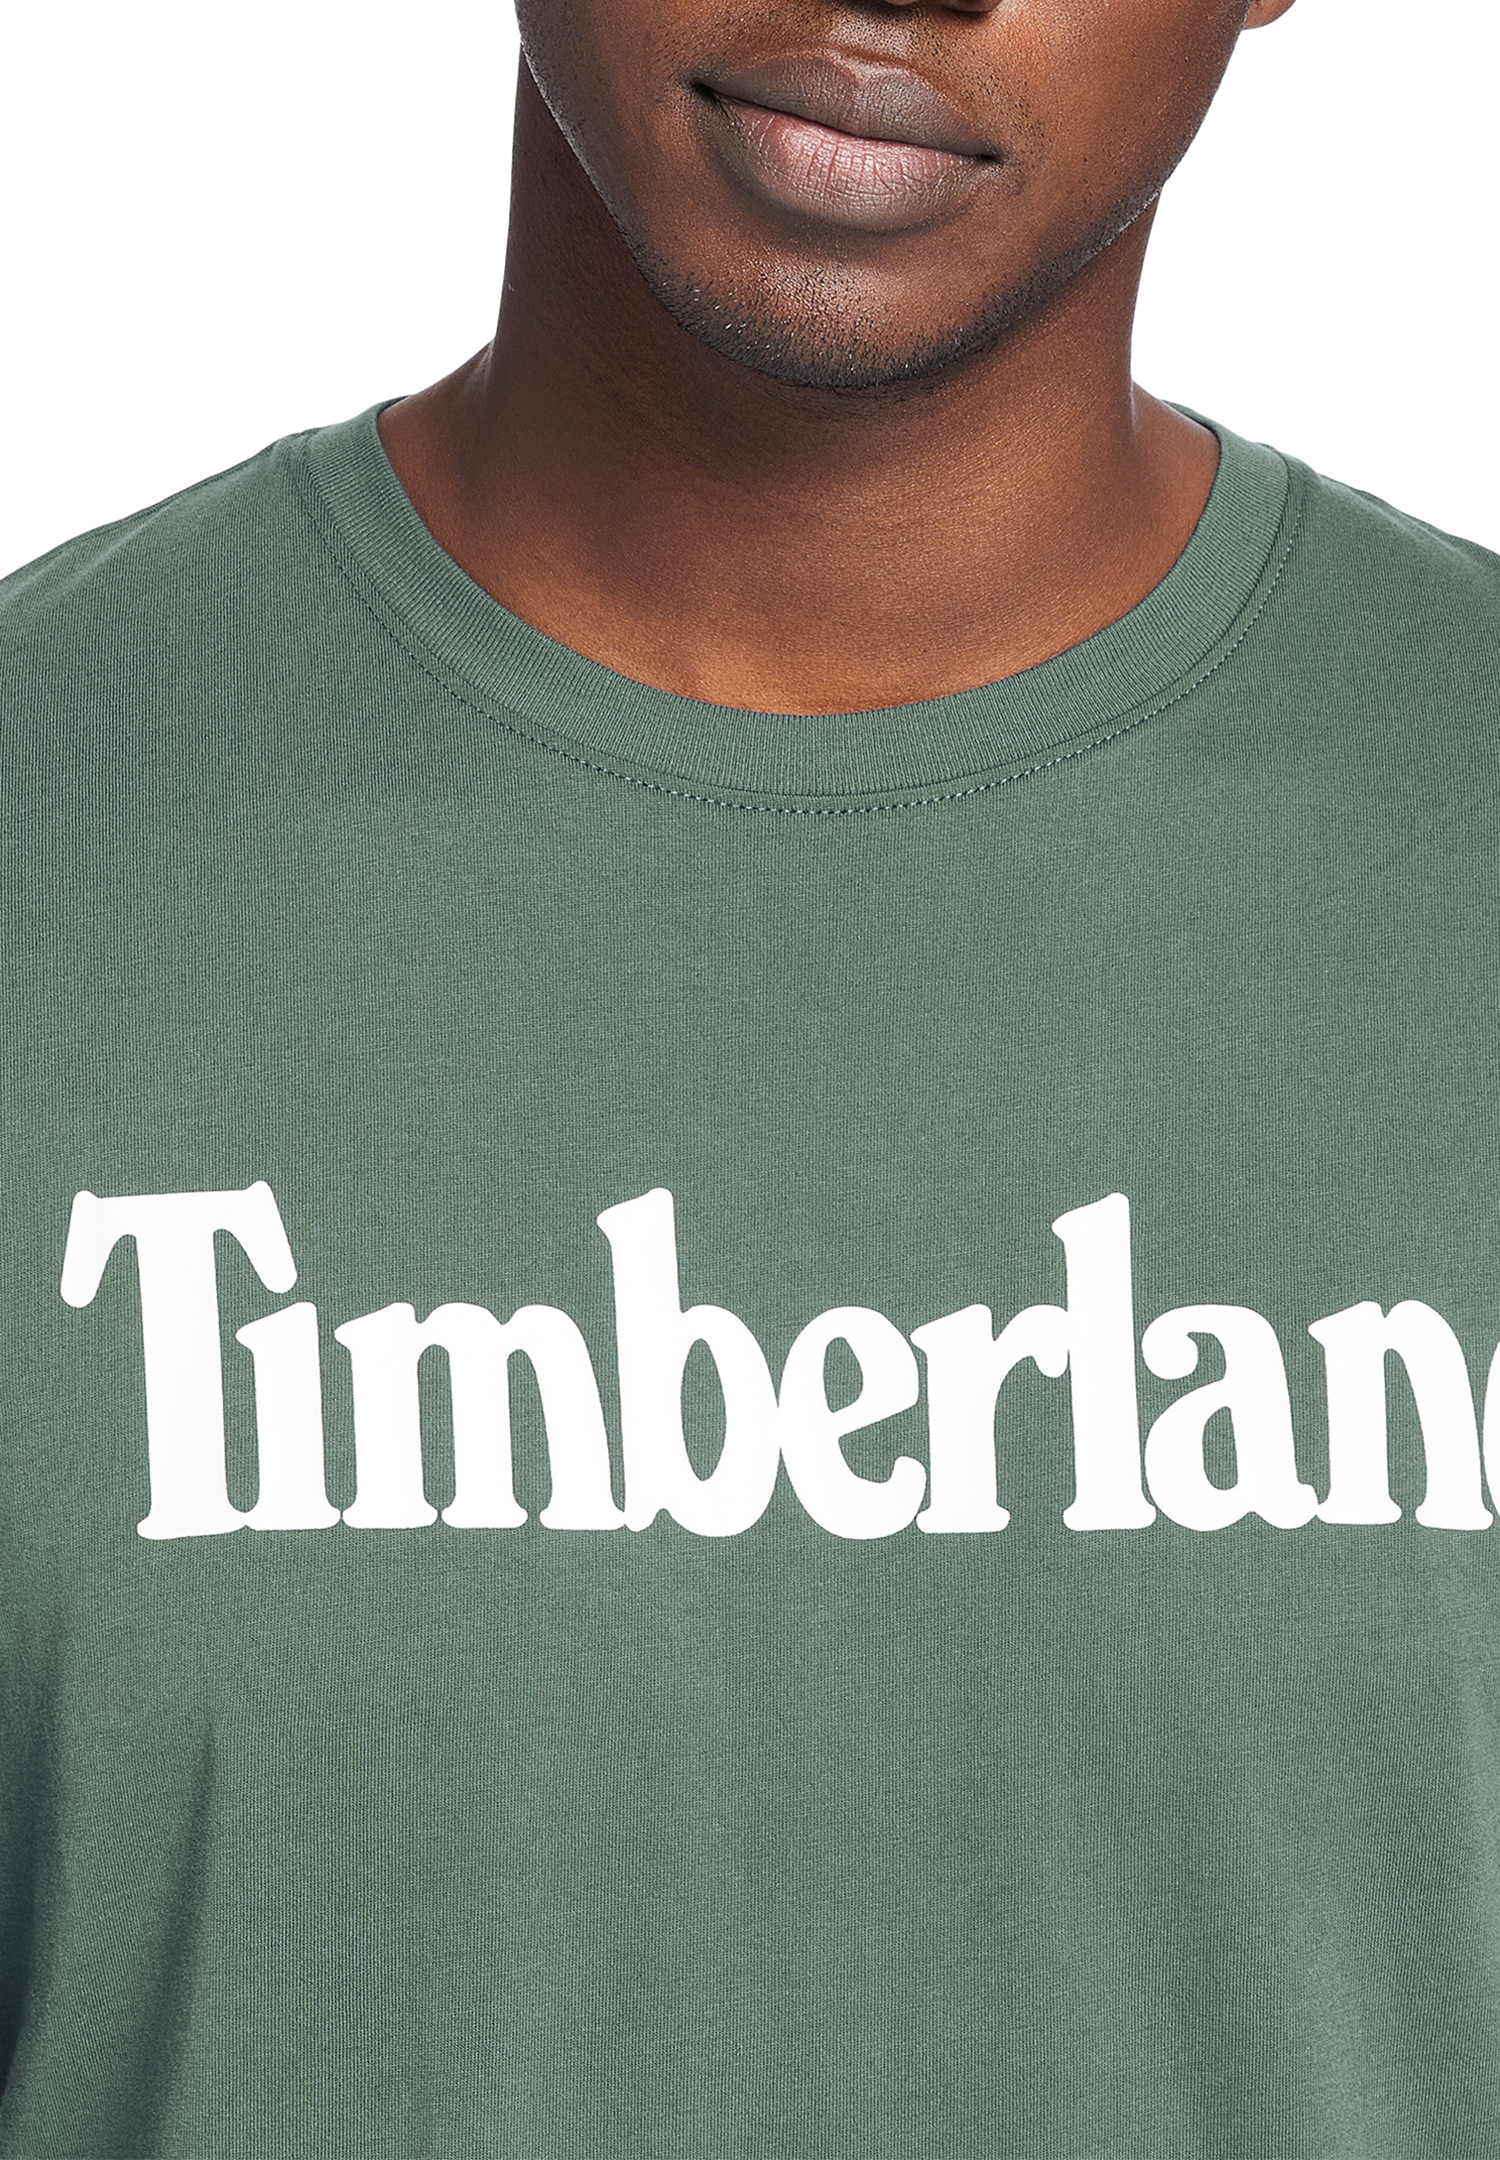 Timberland TFO SS Linear Tee Herren T-Shirt Shirt TB0A2BRN Grün